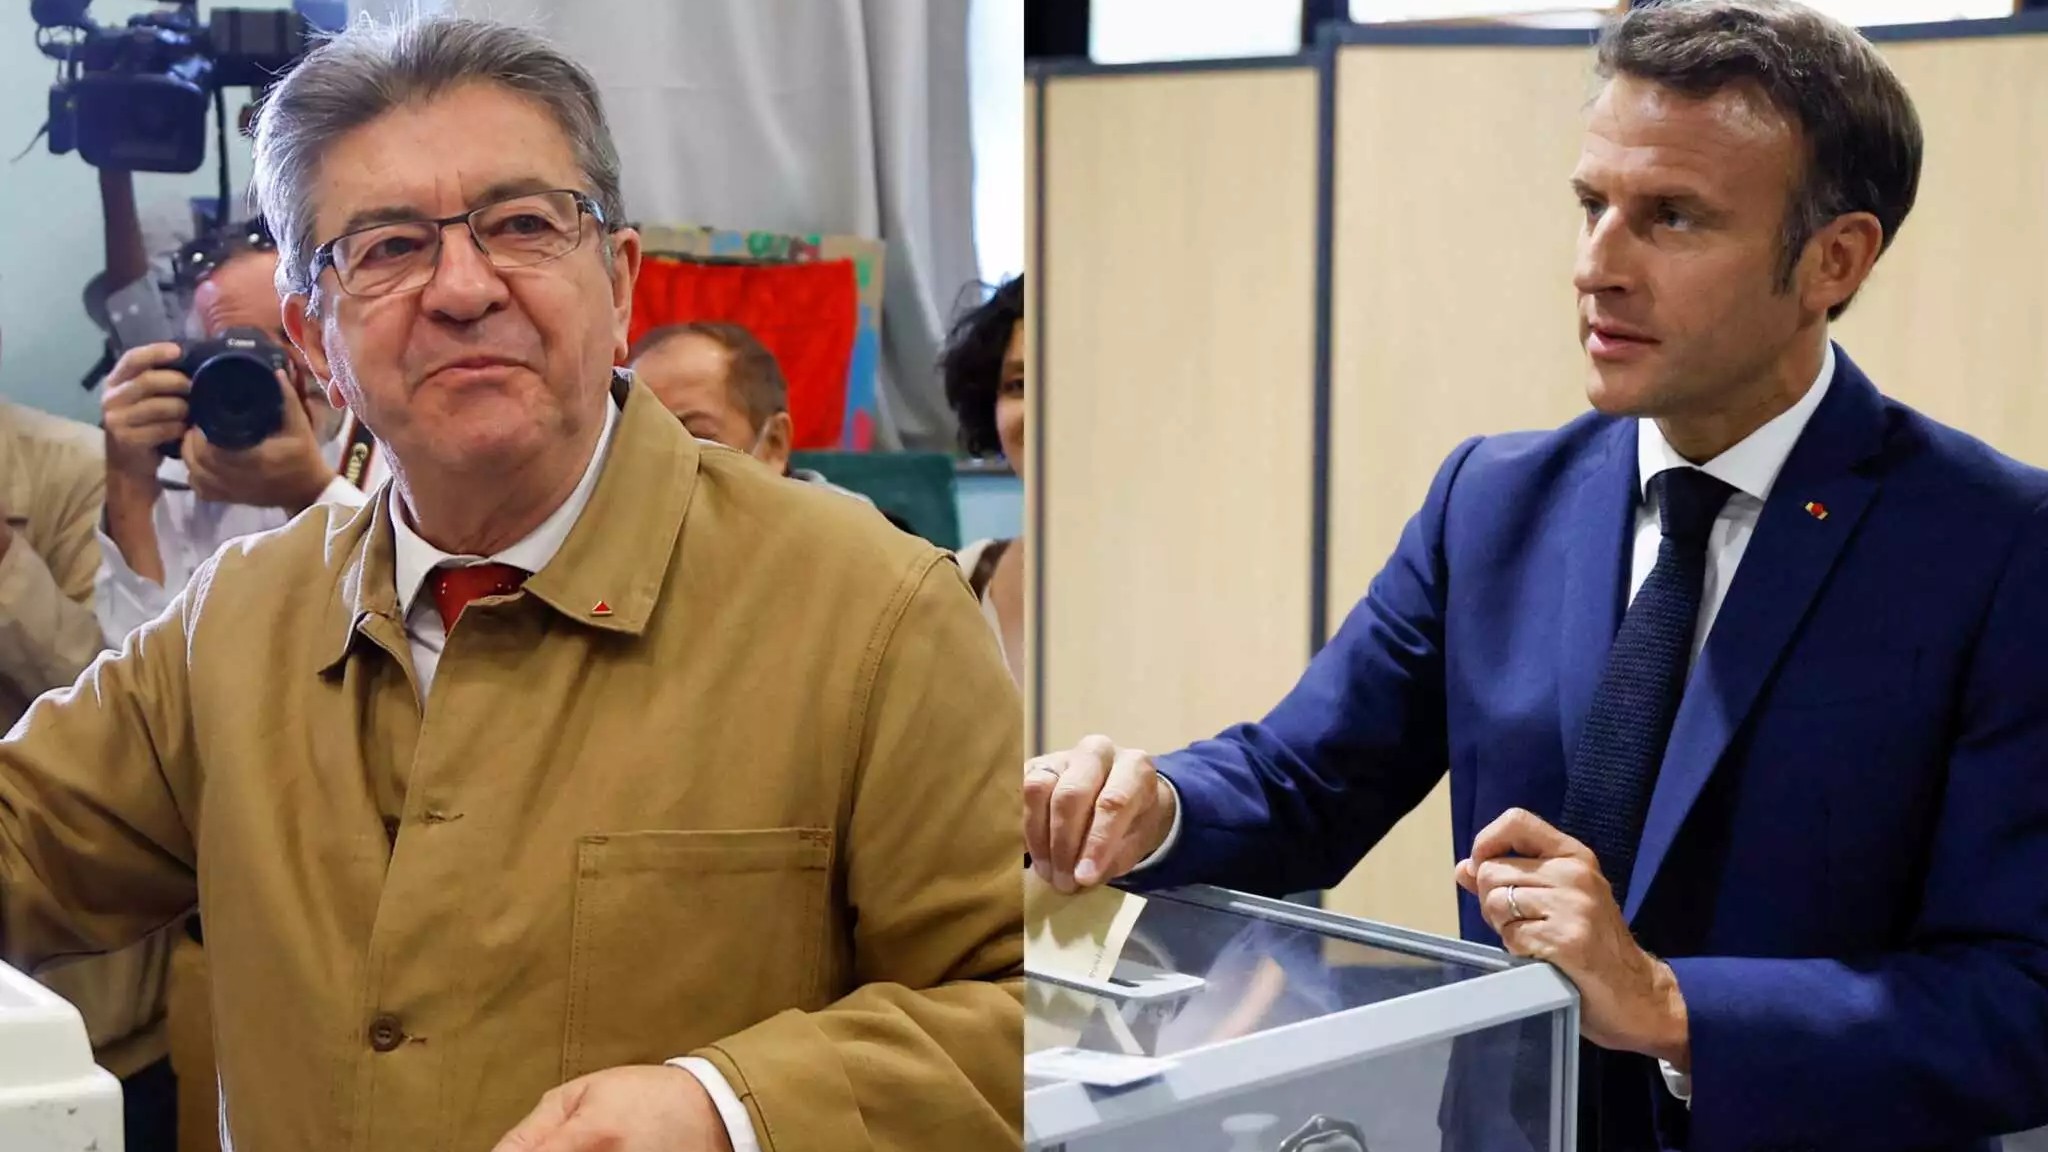 Εκλογές στη Γαλλία: Θρίλερ για την απόλυτη πλειοψηφία – Ο Μελανσόν τον πρώτο γύρο, ο Μακρόν την πρωτιά στις έδρες